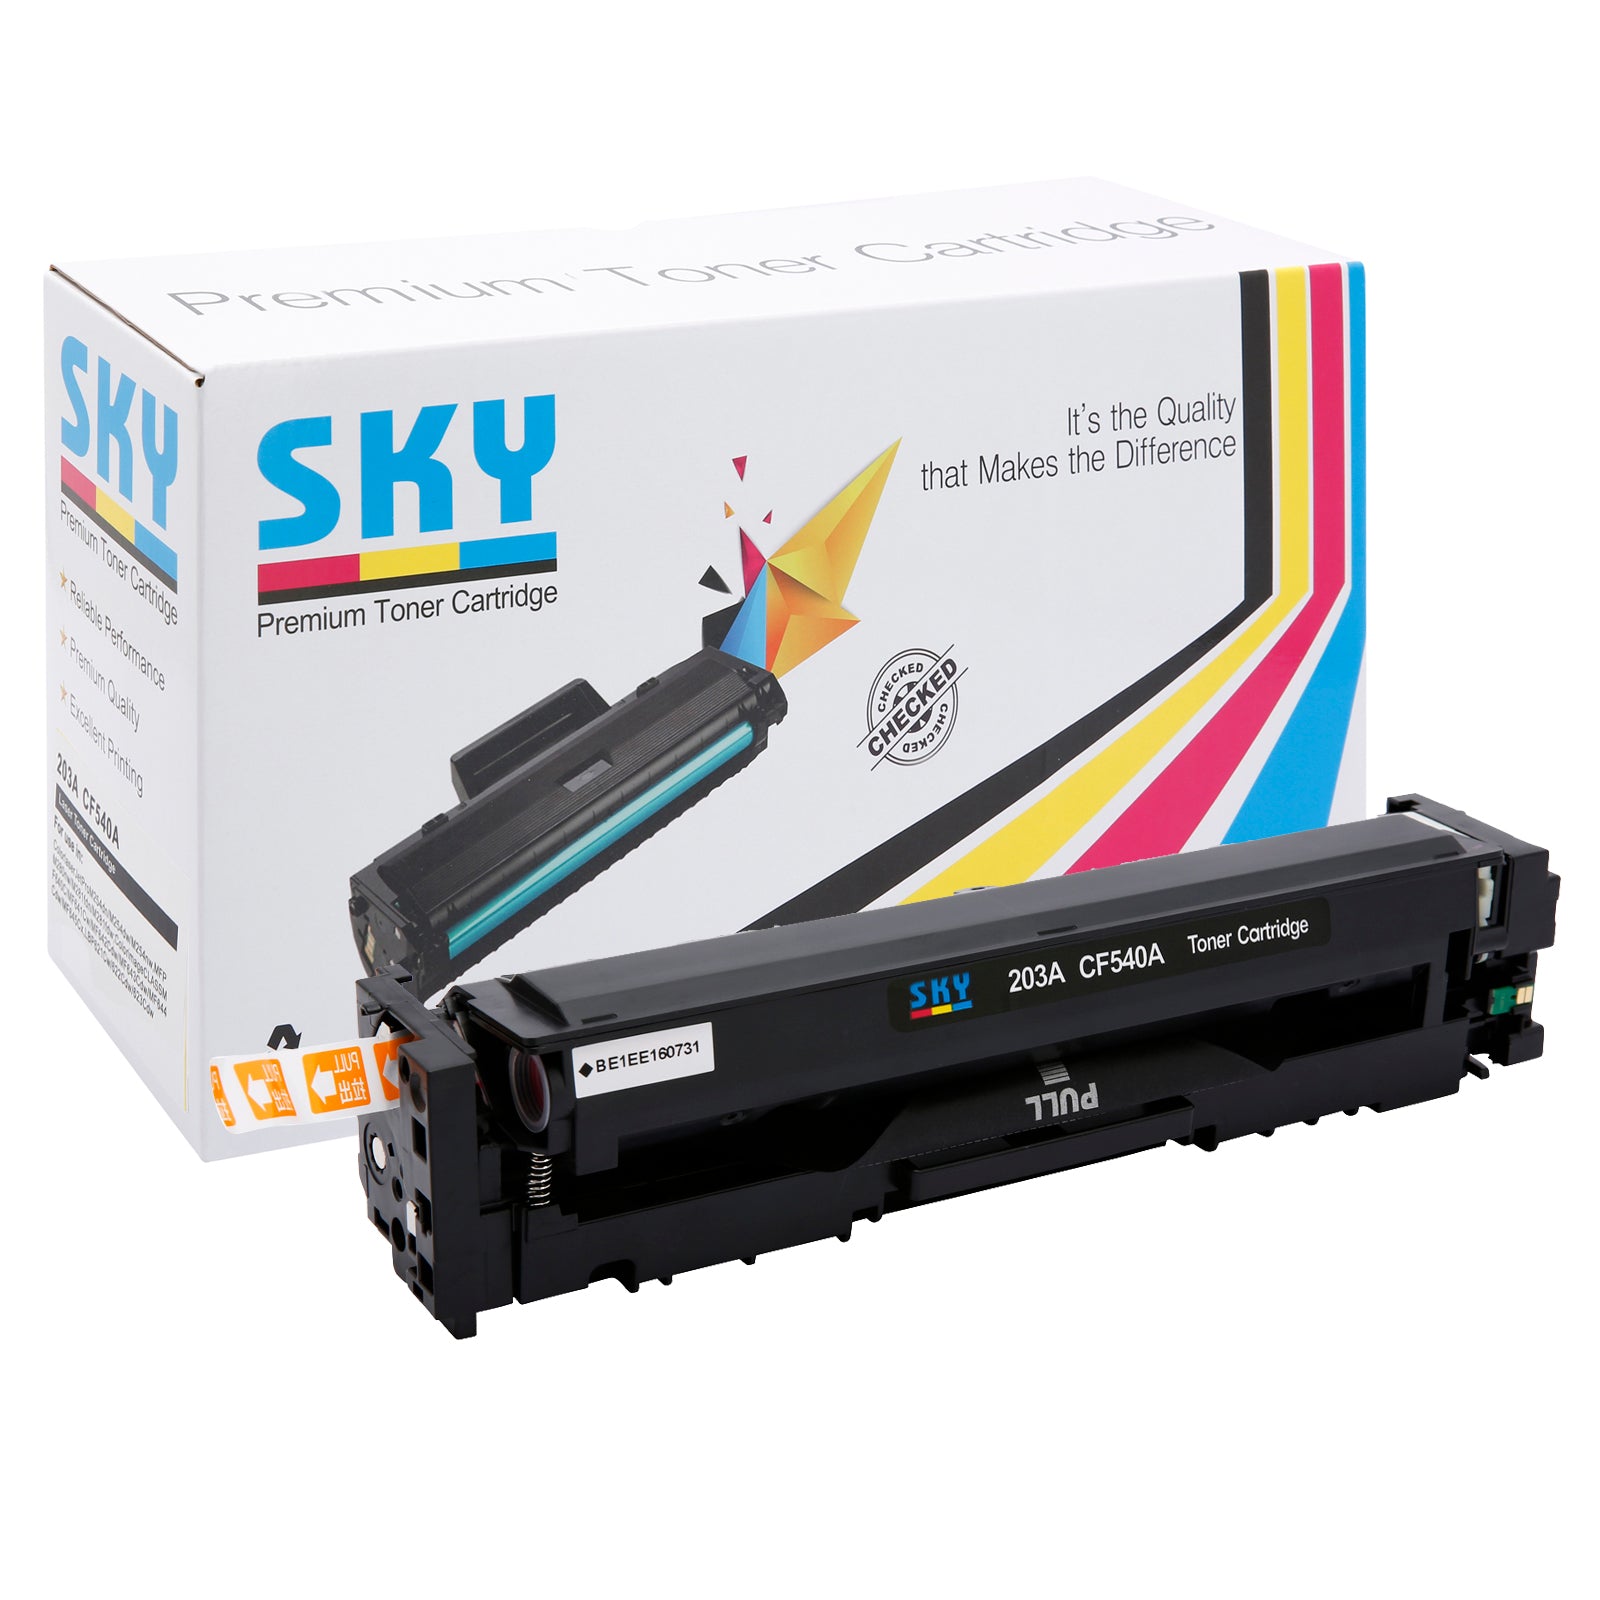 SKY 203A Compatible Toner Cartridges for HP Colour LaserJet Pro M254, MFP M280 and M281